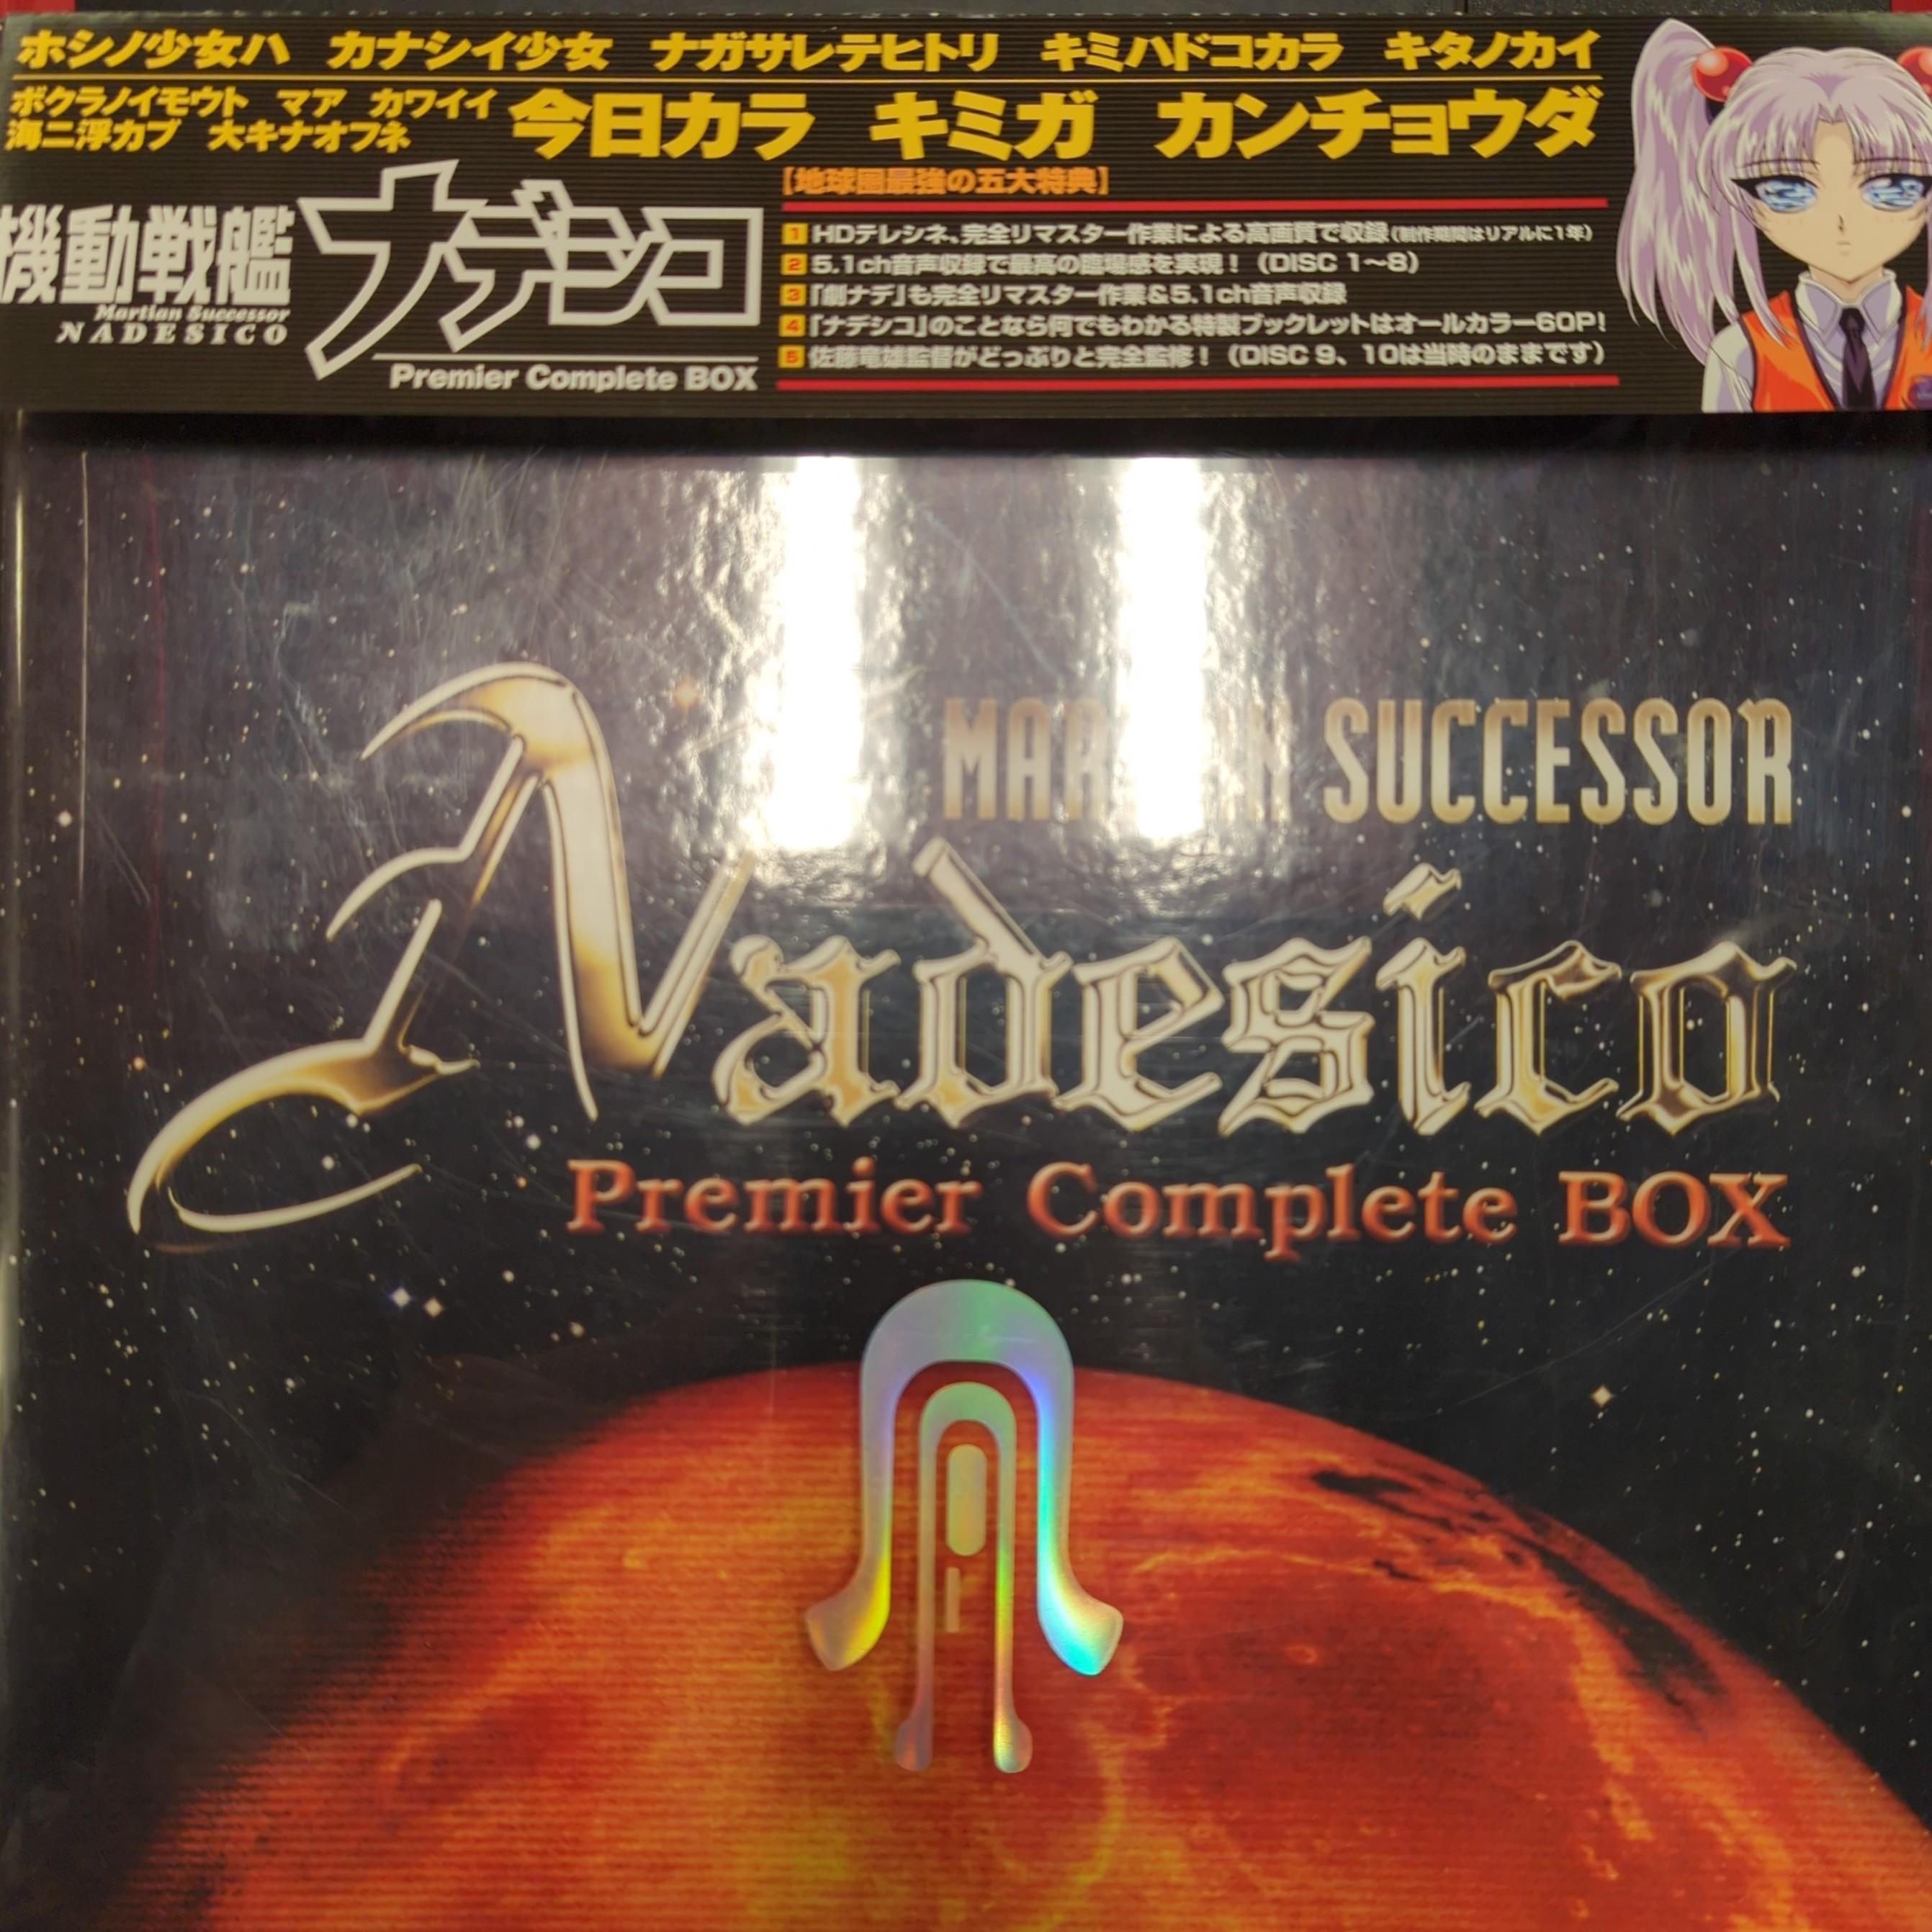 【正規品最新作】DVD 機動戦艦ナデシコ DVD-BOX アニメ か行